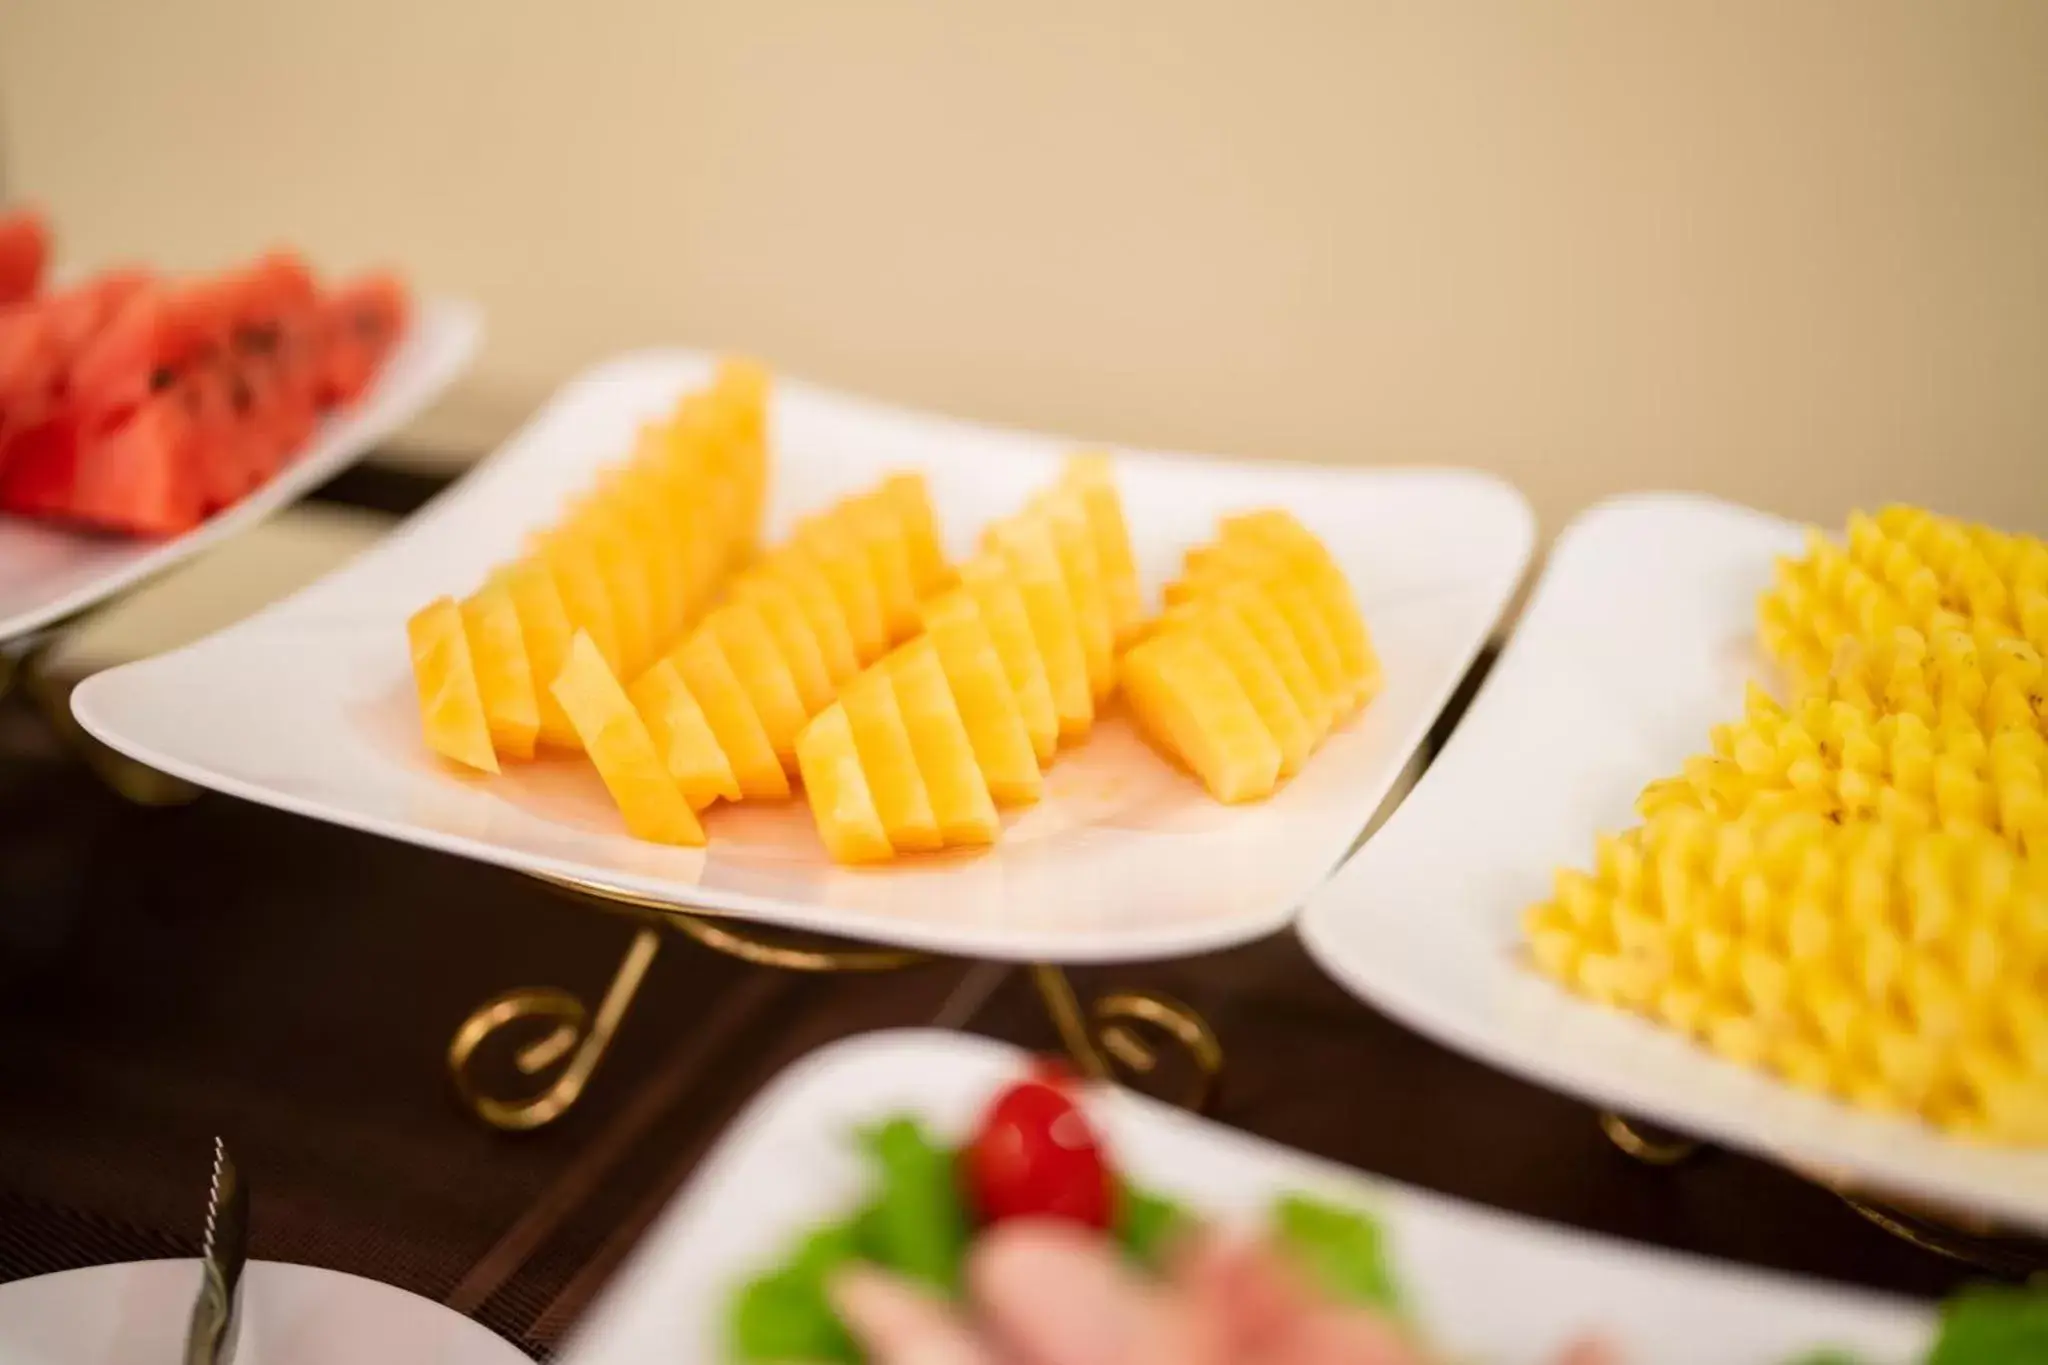 Buffet breakfast, Food in Golden Legend Diamond Hotel